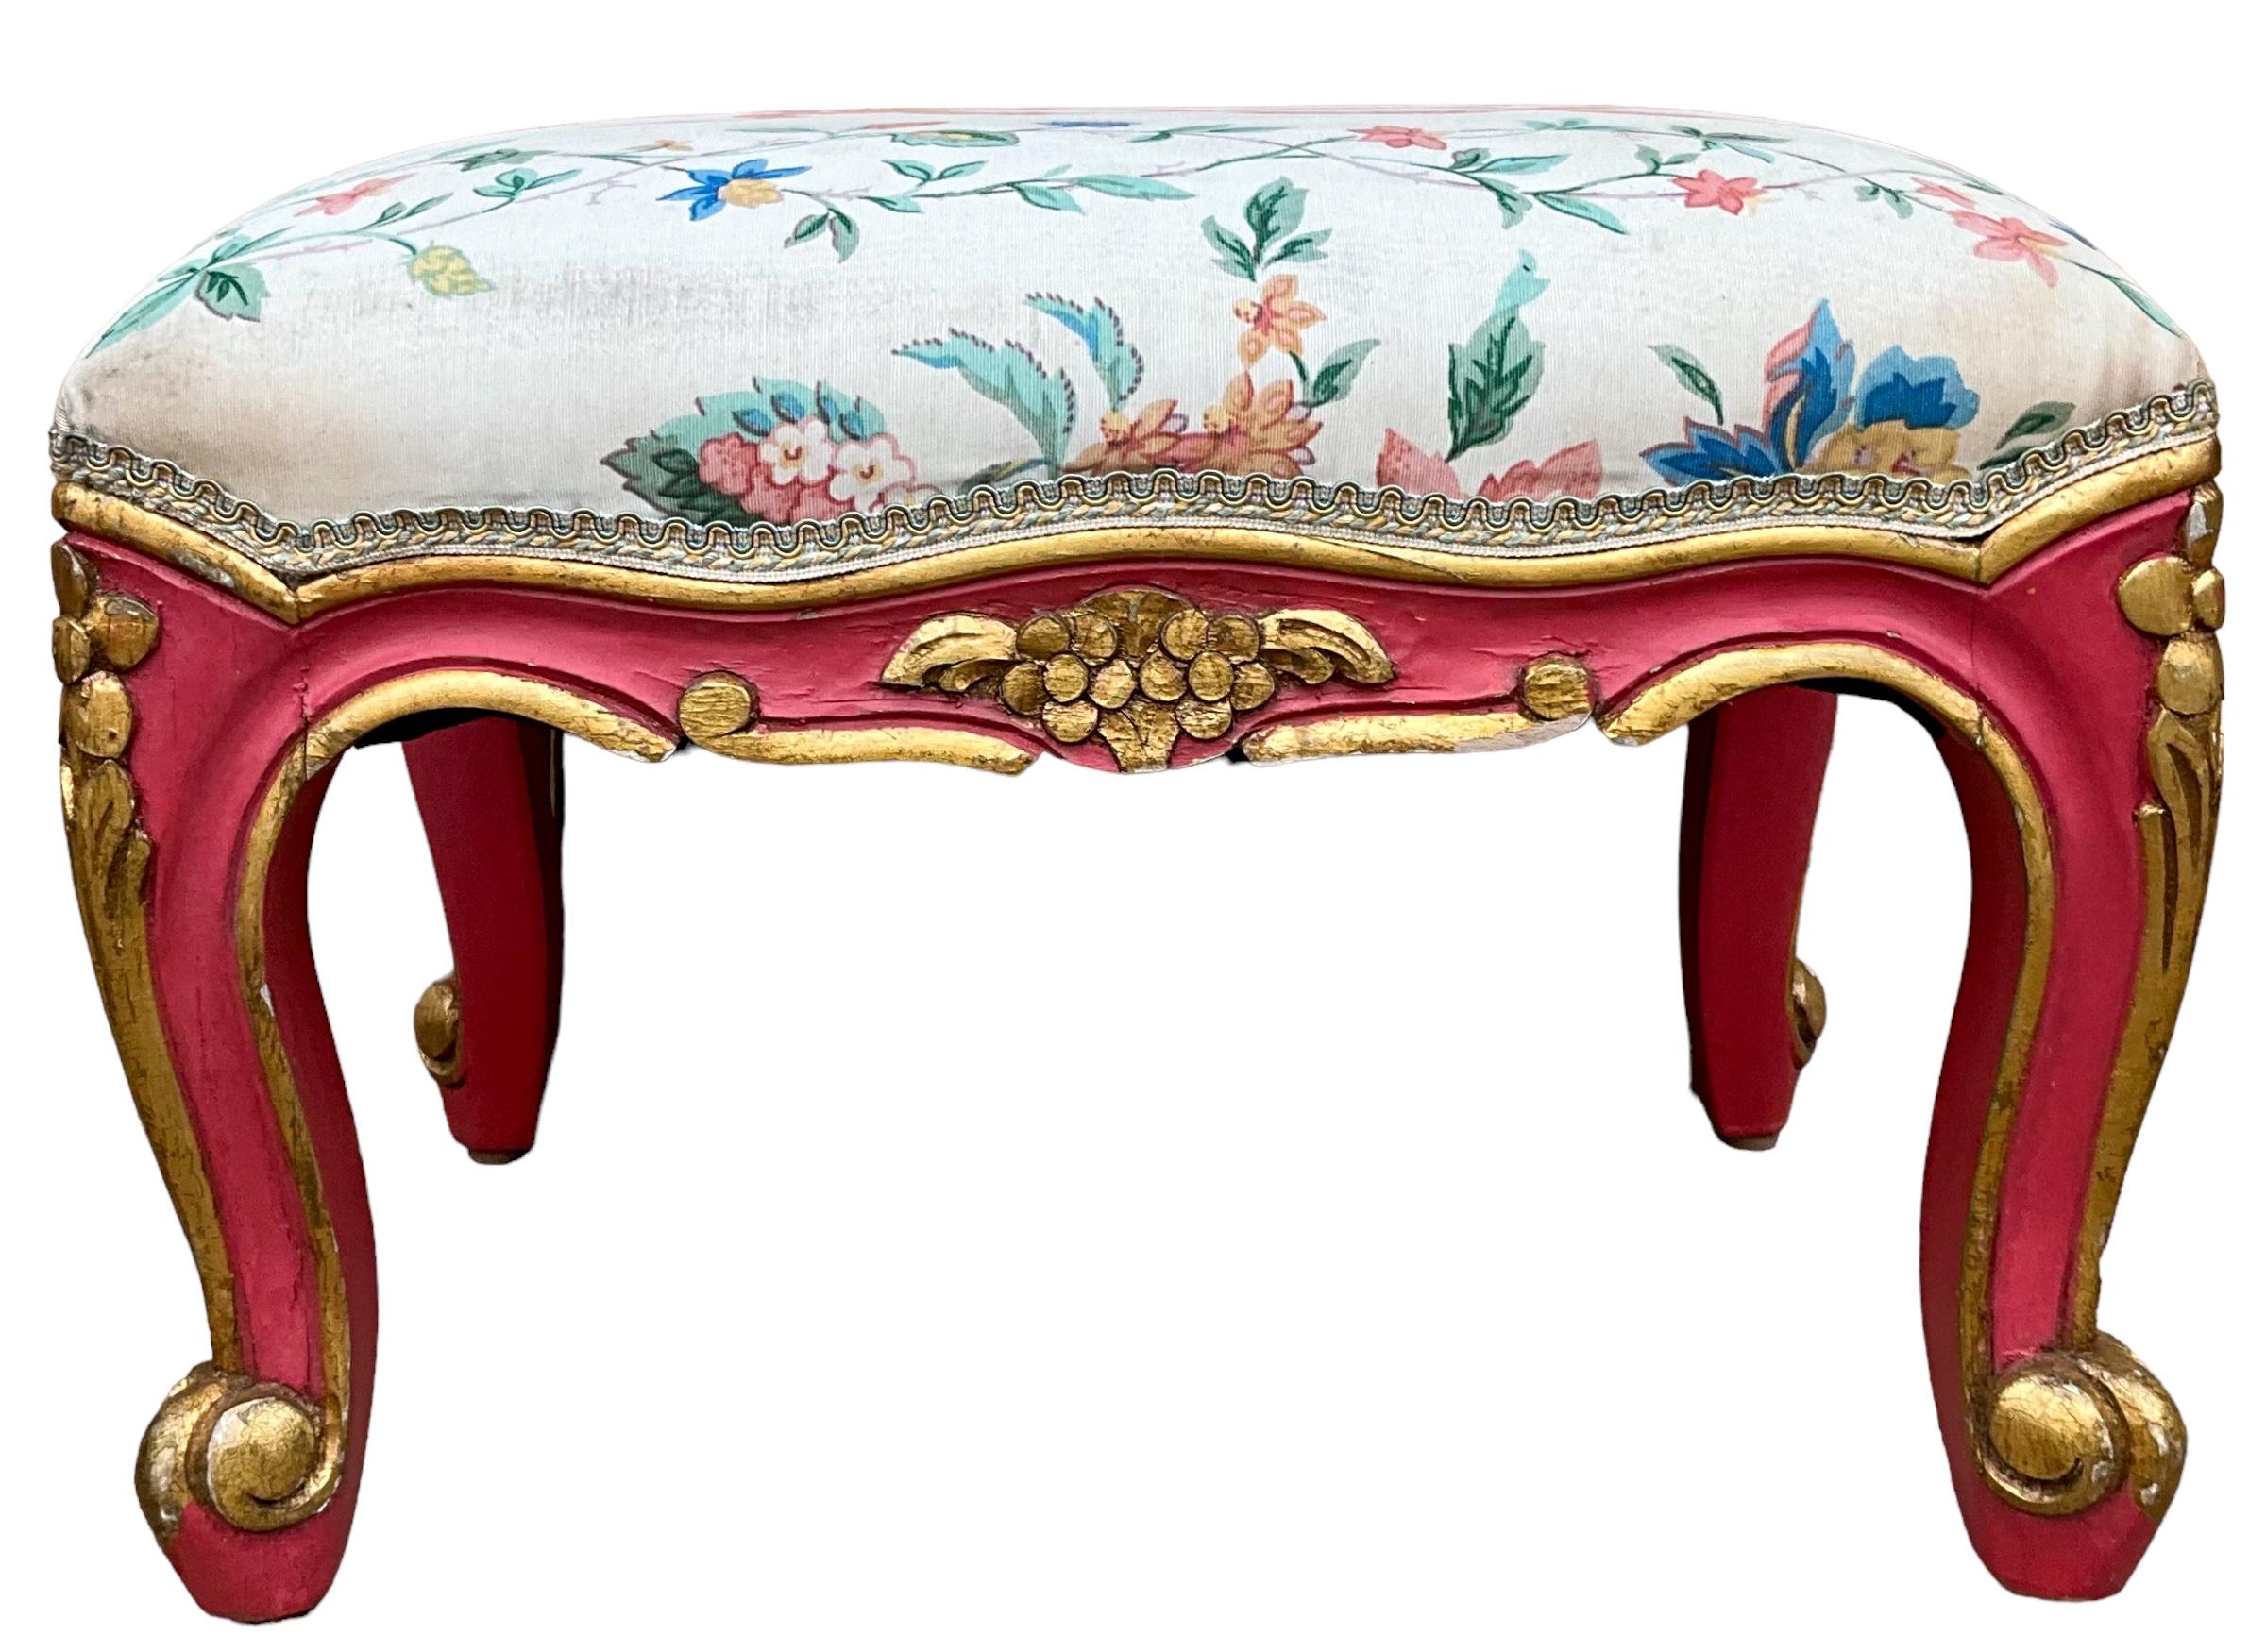 Il s'agit d'une paire d'ottomans vénitiens de style Louis XV datant du milieu du siècle dernier. Ils sont peints en rose avec des accents floraux et des garnitures dorés. Malheureusement, la sellerie a besoin d'être remplacée. Ils ne sont pas